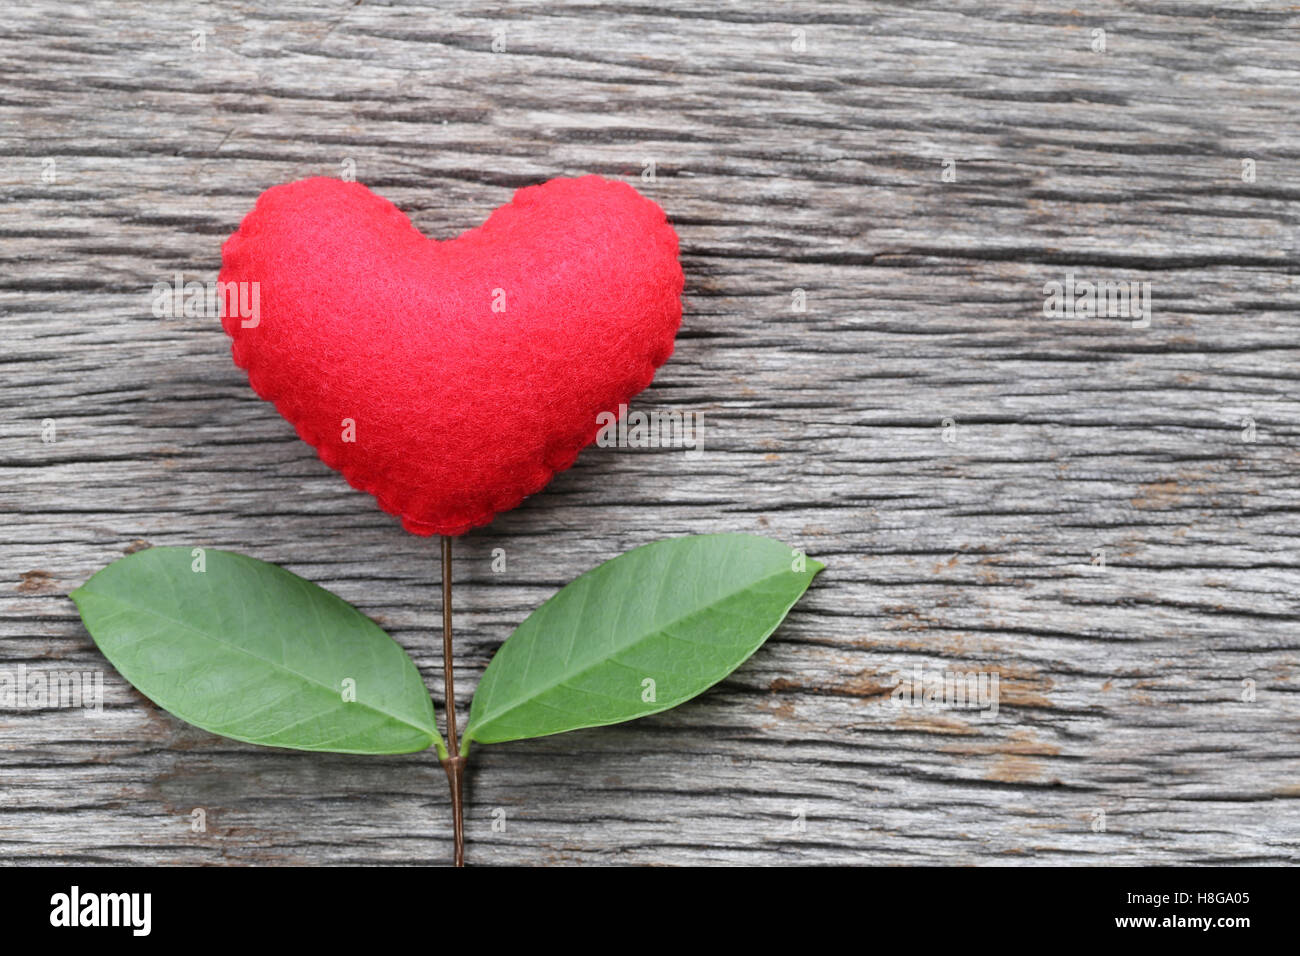 Rotes Herz, platziert auf einem alten Holztisch in Verbindung mit Äste eines Baumes und haben grüne Blätter, Konzept der Liebe Einfühlungsvermögen kümmern Stockfoto